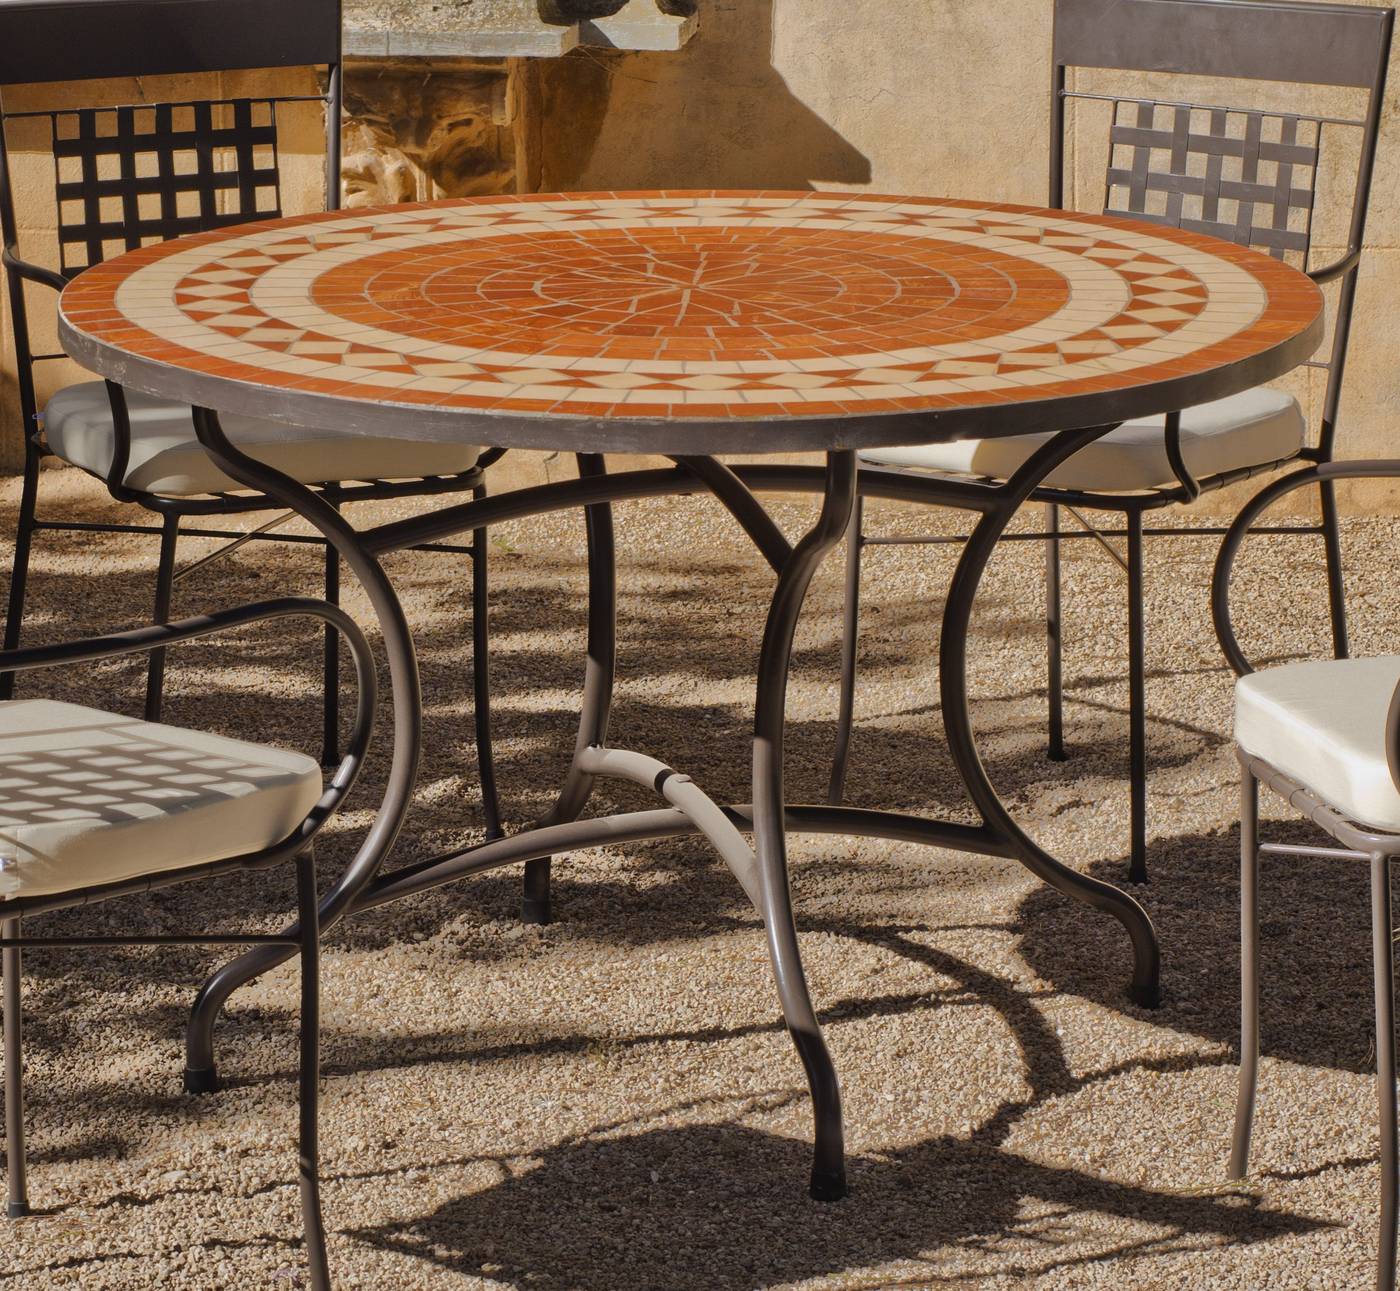 Set Mosaico Lorni-Bergamo 120-4 - Conjunto de forja para jardín: 1 mesa con panel mosaico + 4 sillones de ratán sintético + 4 cojines